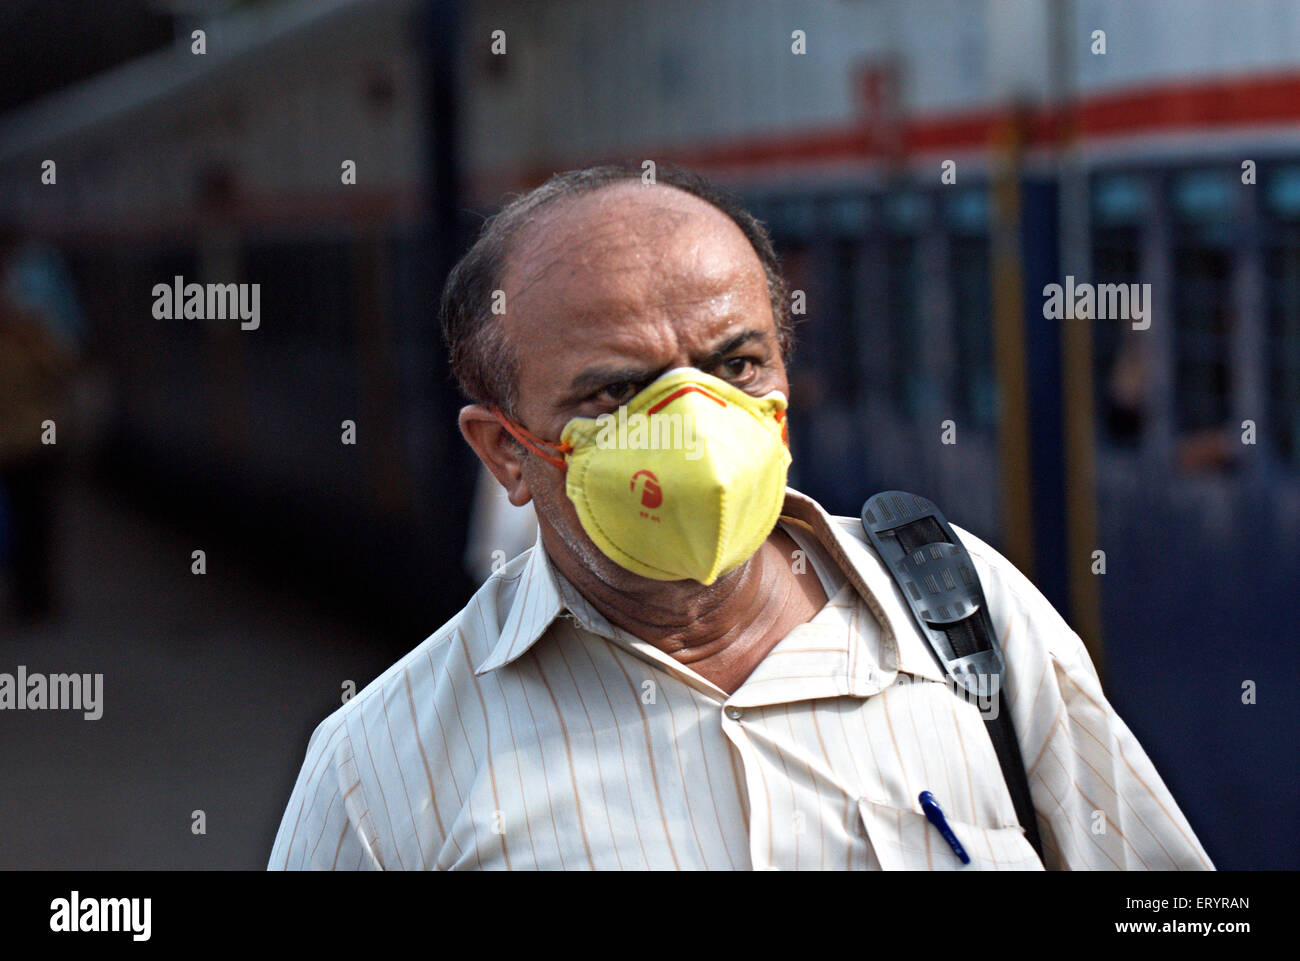 Visage de l'homme avec protection masque contre le virus ; Bombay ; Mumbai ; Maharashtra ; Inde Banque D'Images